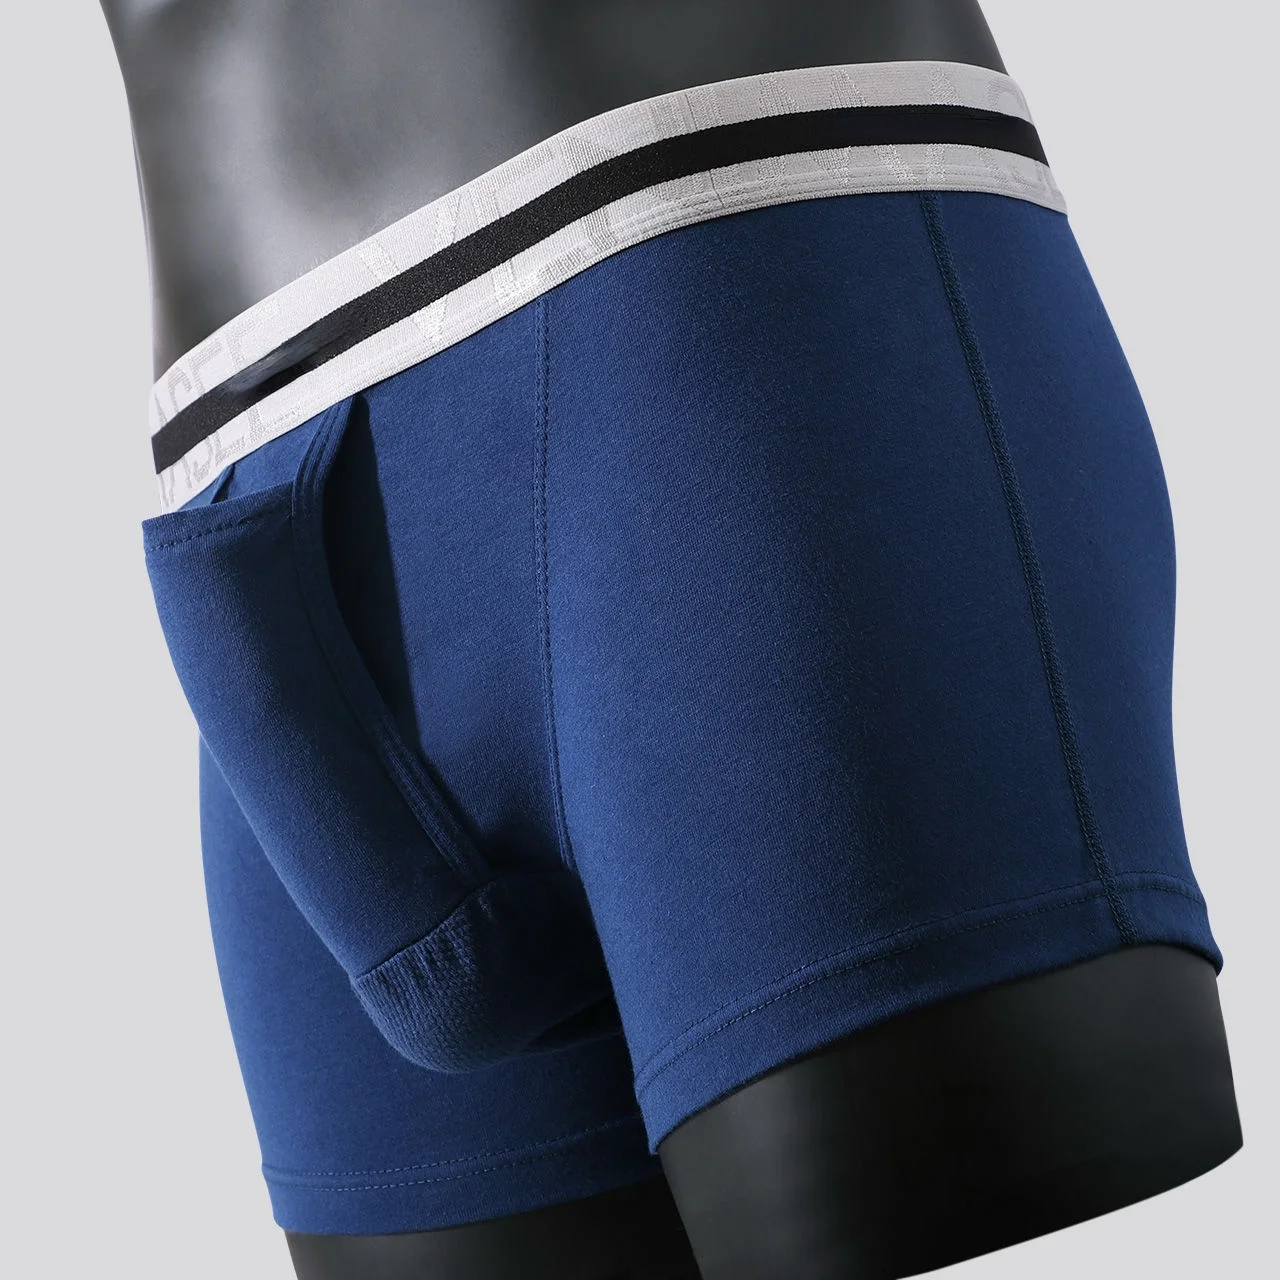 https://ae01.alicdn.com/kf/Sd4e5317e450d4b2796877b96b7bef7f2R/Men-s-Underwear-Pure-Cotton-Boxer-Shorts-Bullet-Separation-Varicocele-Scrotum-Pocket-Four-Corners-Testicle-raising.jpg